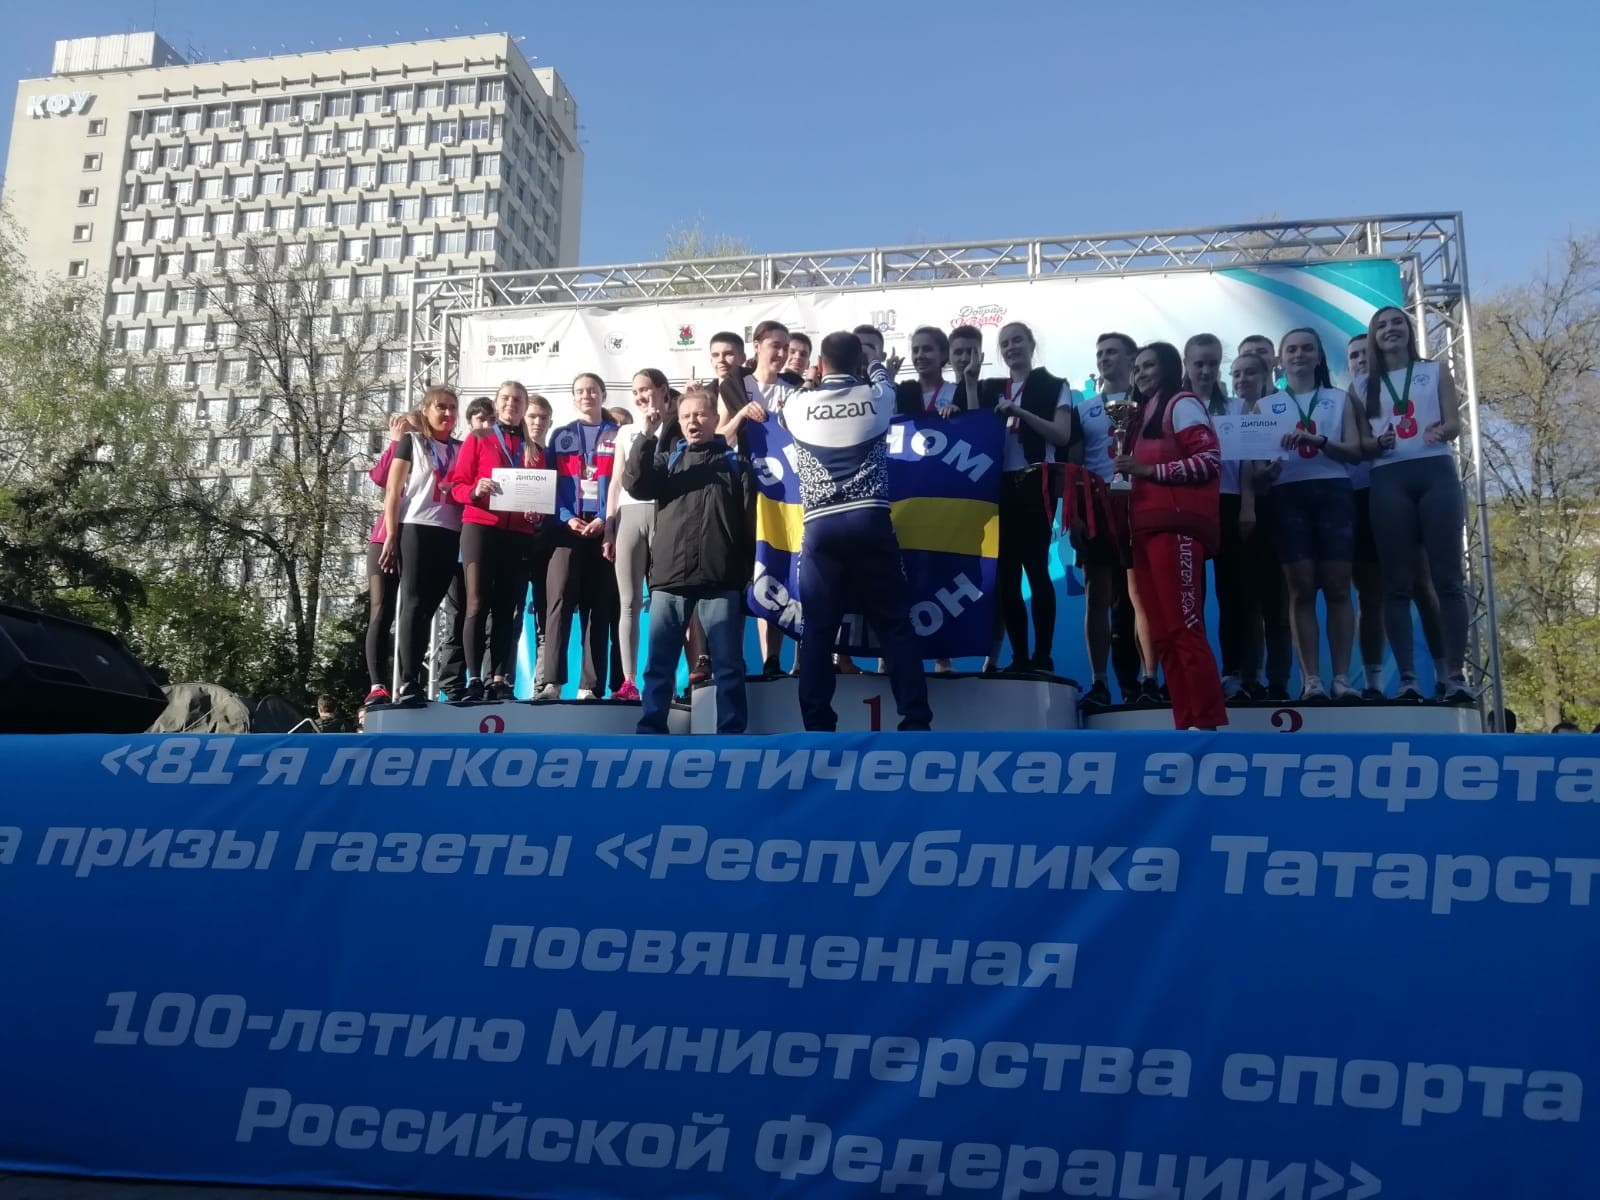 81-я легкоатлетическая эстафета на призы газеты 'Республика Татарстан'